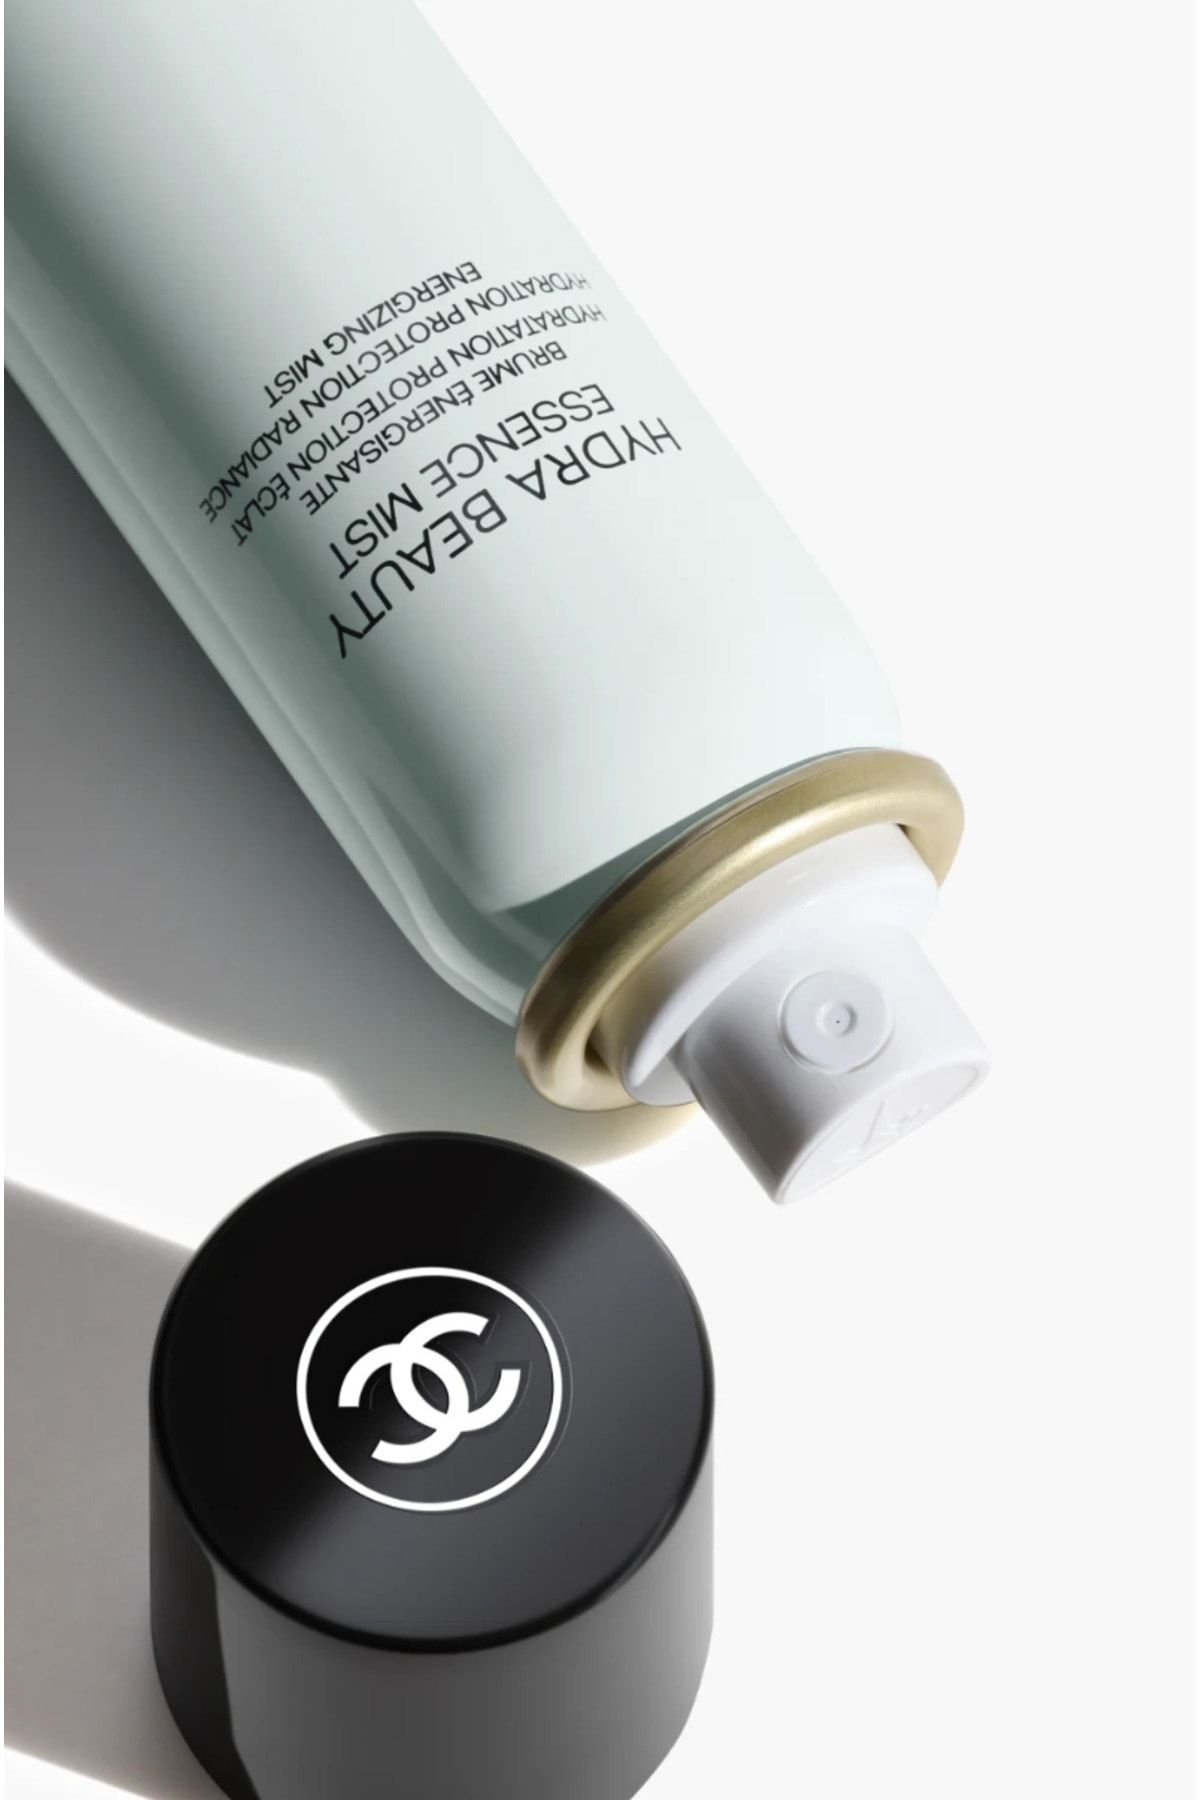 Chanel اسانس میست انرژی رسان و محافظت کننده Hydra Beauty آبرسانی، درخشندگی و احیا کننده پوست 50 میل